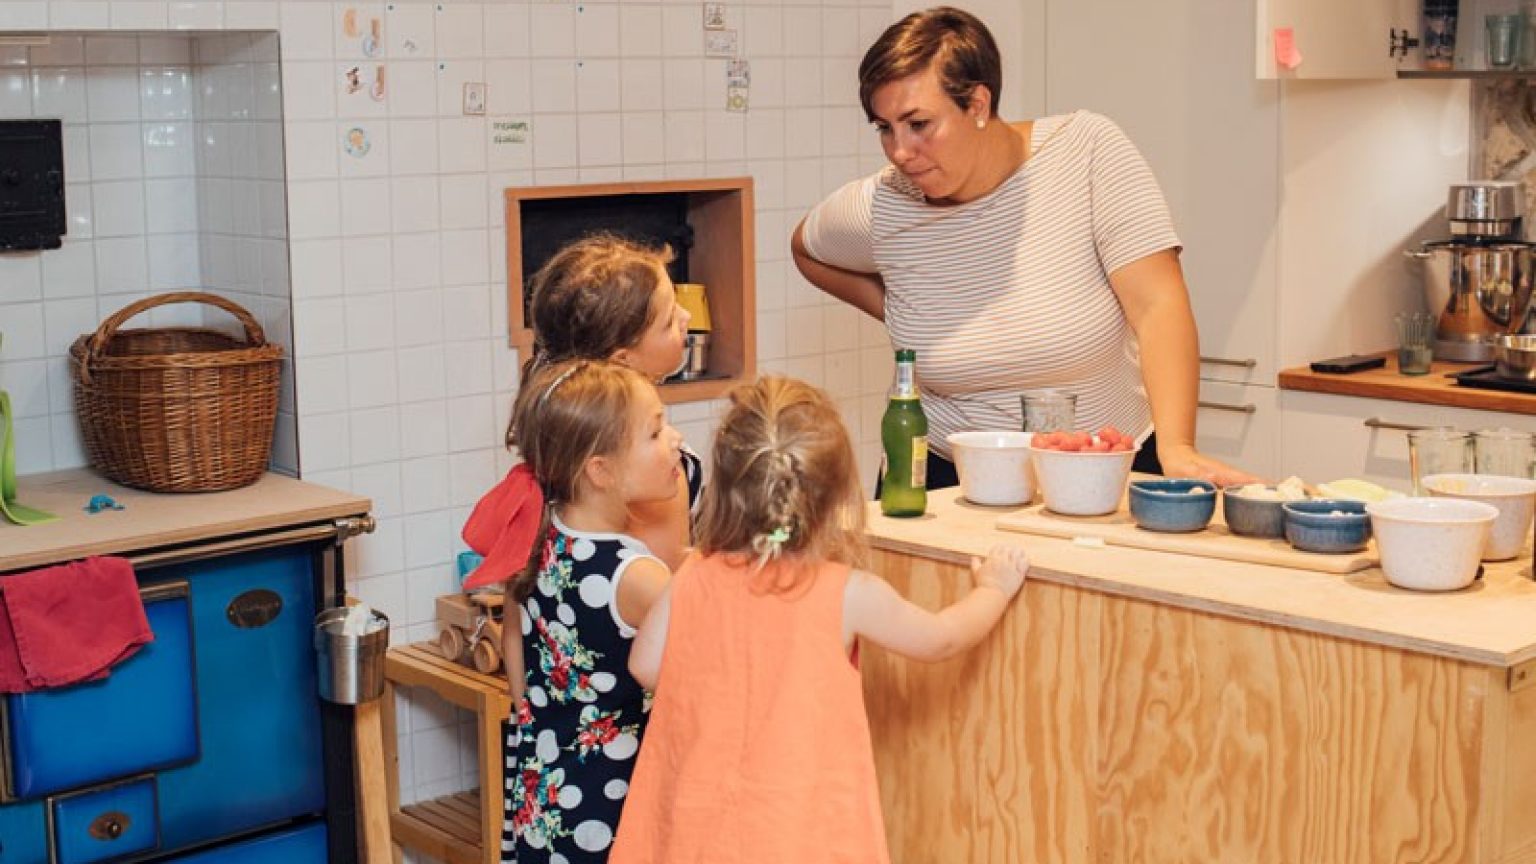 La mère et les enfants préparent ensemble un repas dans la cuisine.